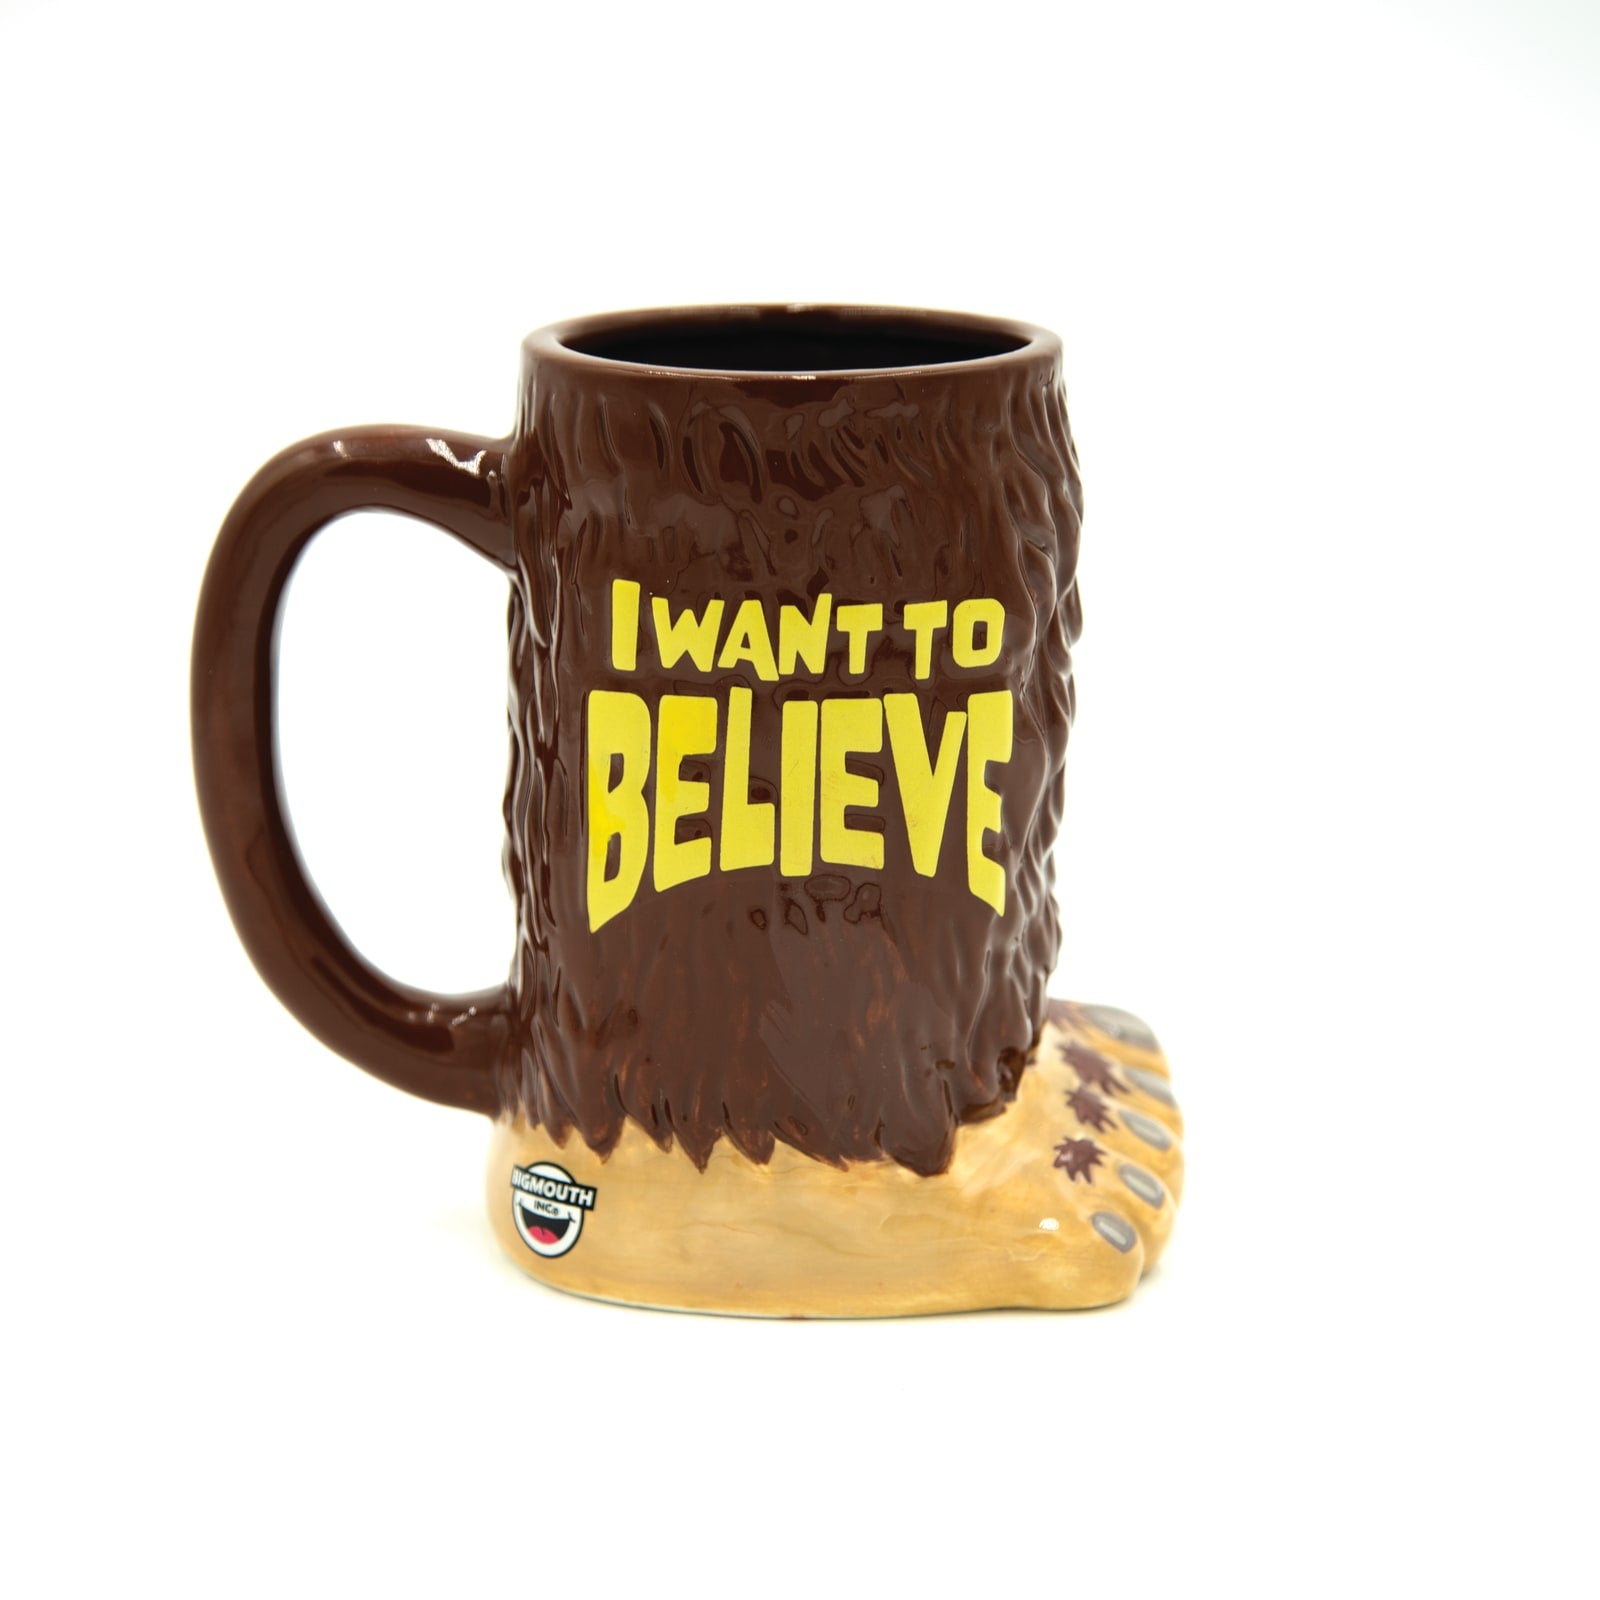 BigMouth Inc. Original Gun Show Coffee Mug, Ceramic Mug, Coffee Mug, Gym  Coffee Mug, Funny Novelty Gift, 24 oz.